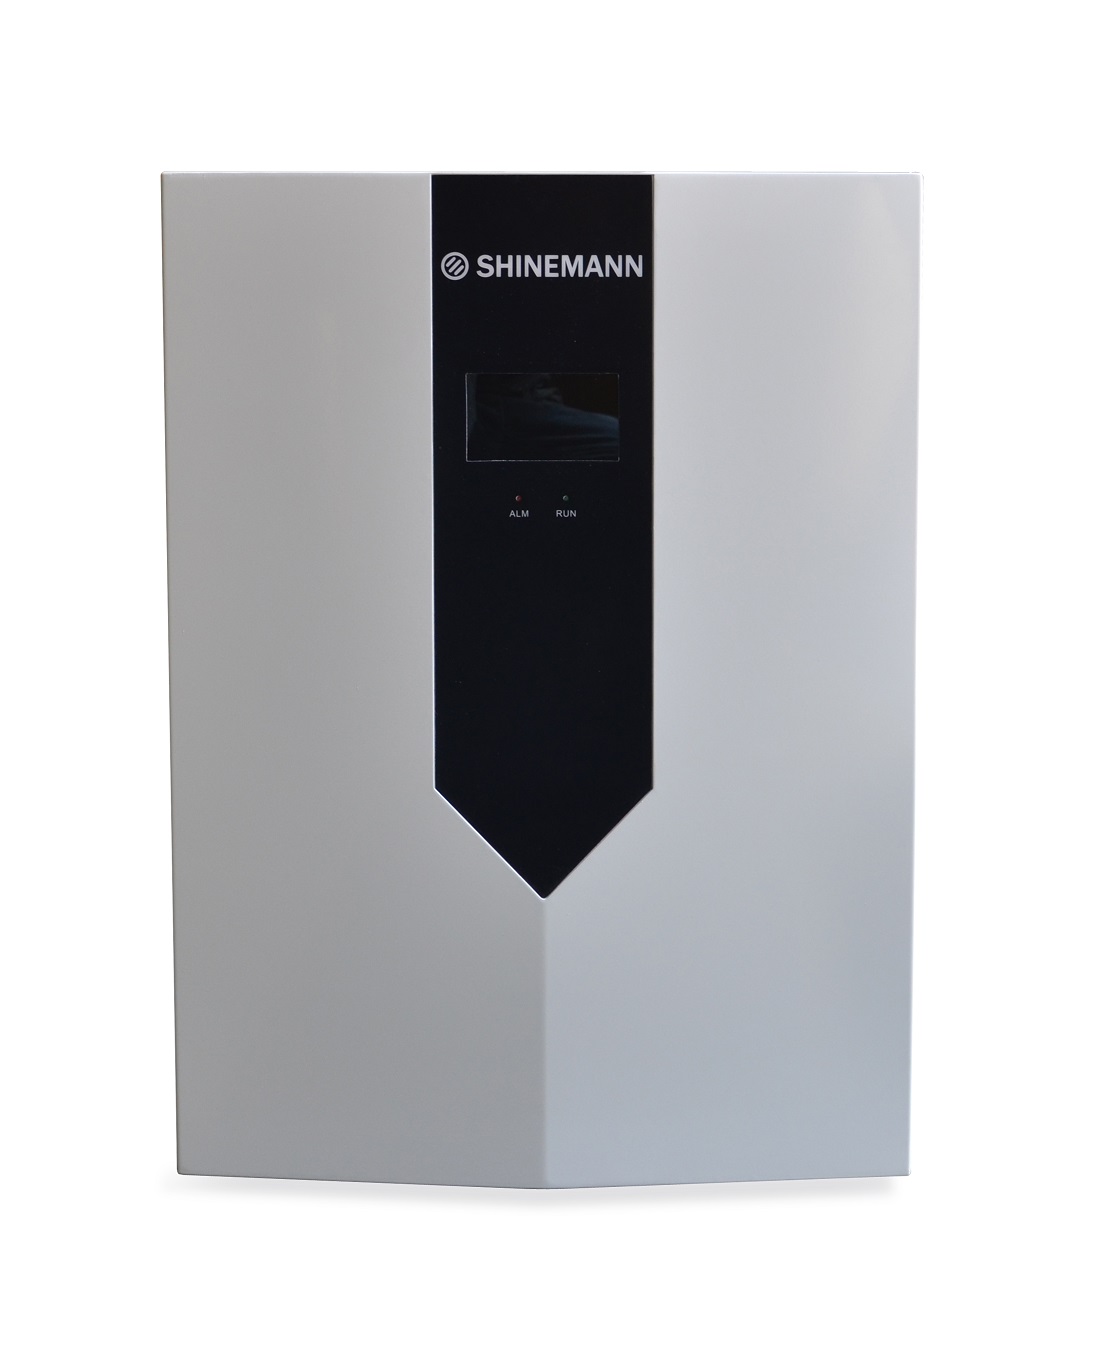 SHINEMANN SOLAR INSELANLAGE mit NOTSTROM SYSTEM & 9,6 kWh Speicher